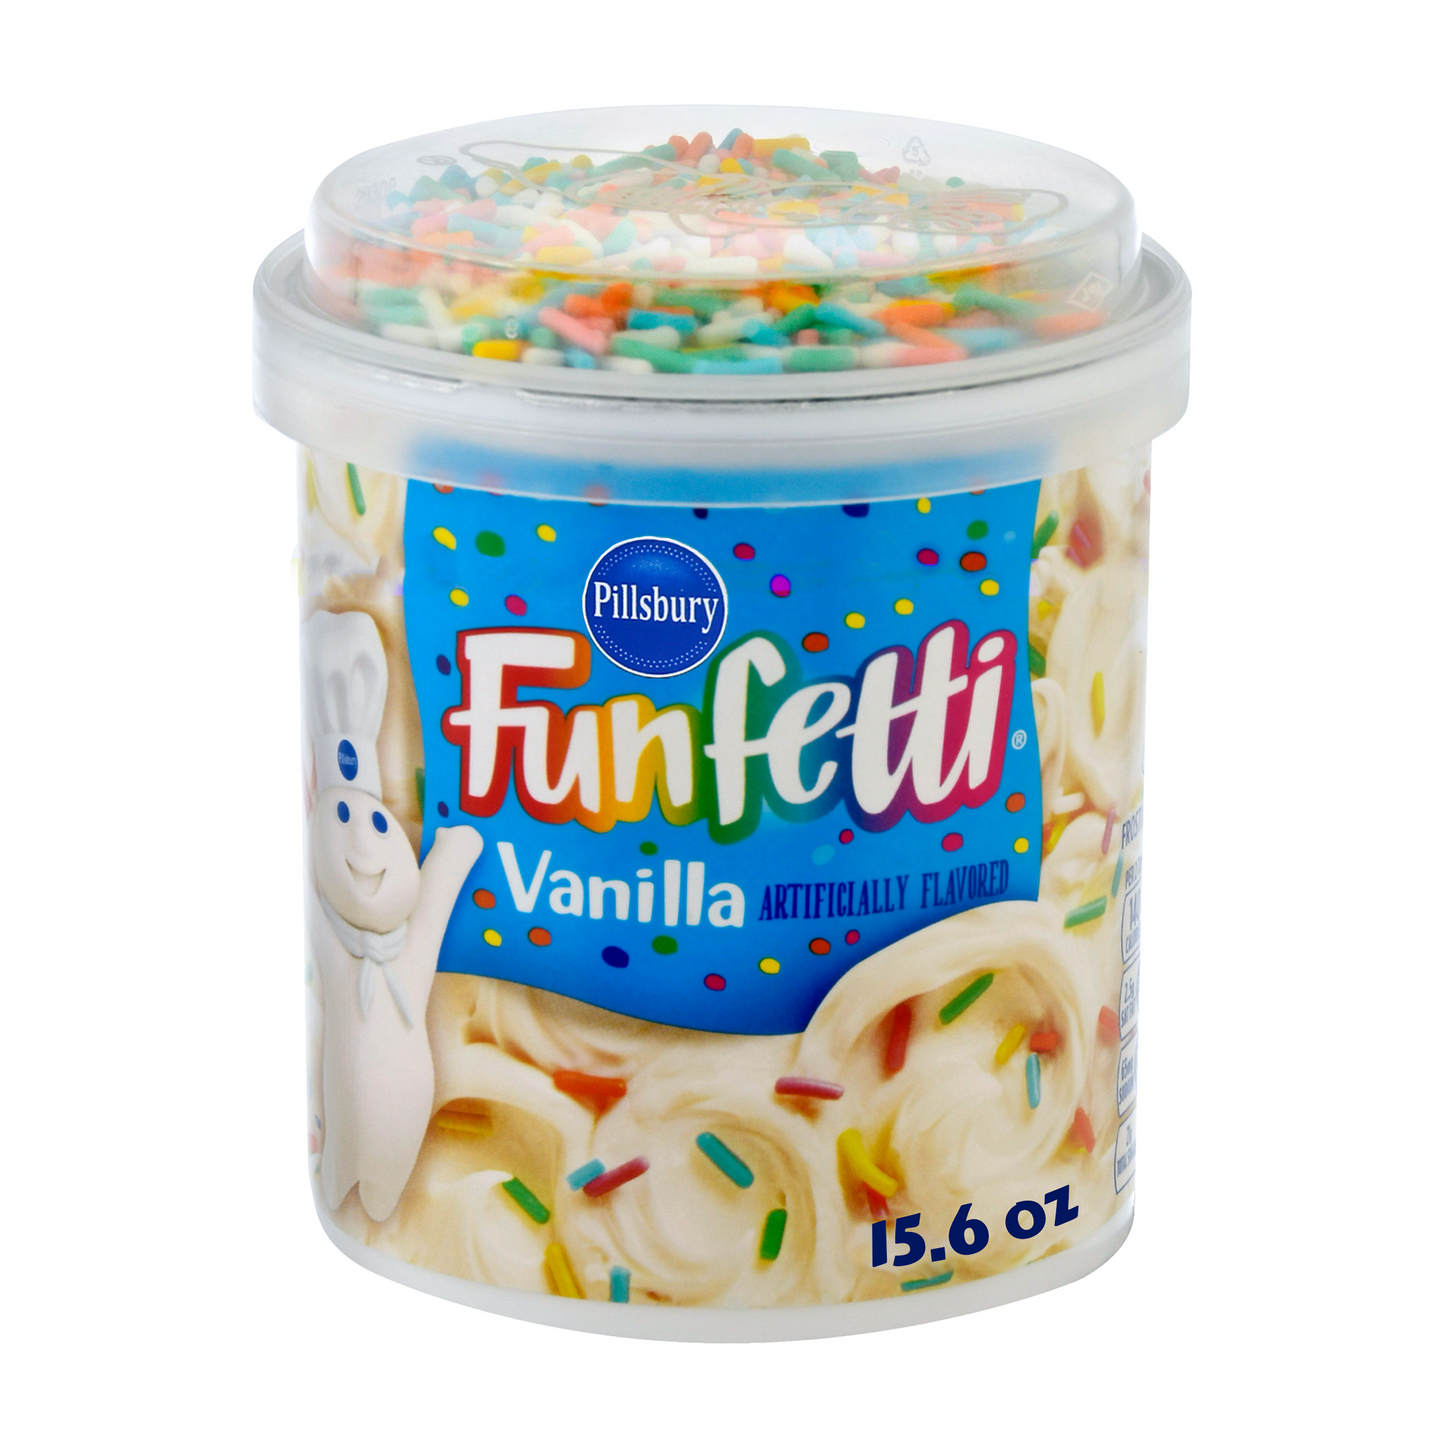 Pillsbury Funfetti Vanilla Frosting, 15.6 Oz Tub